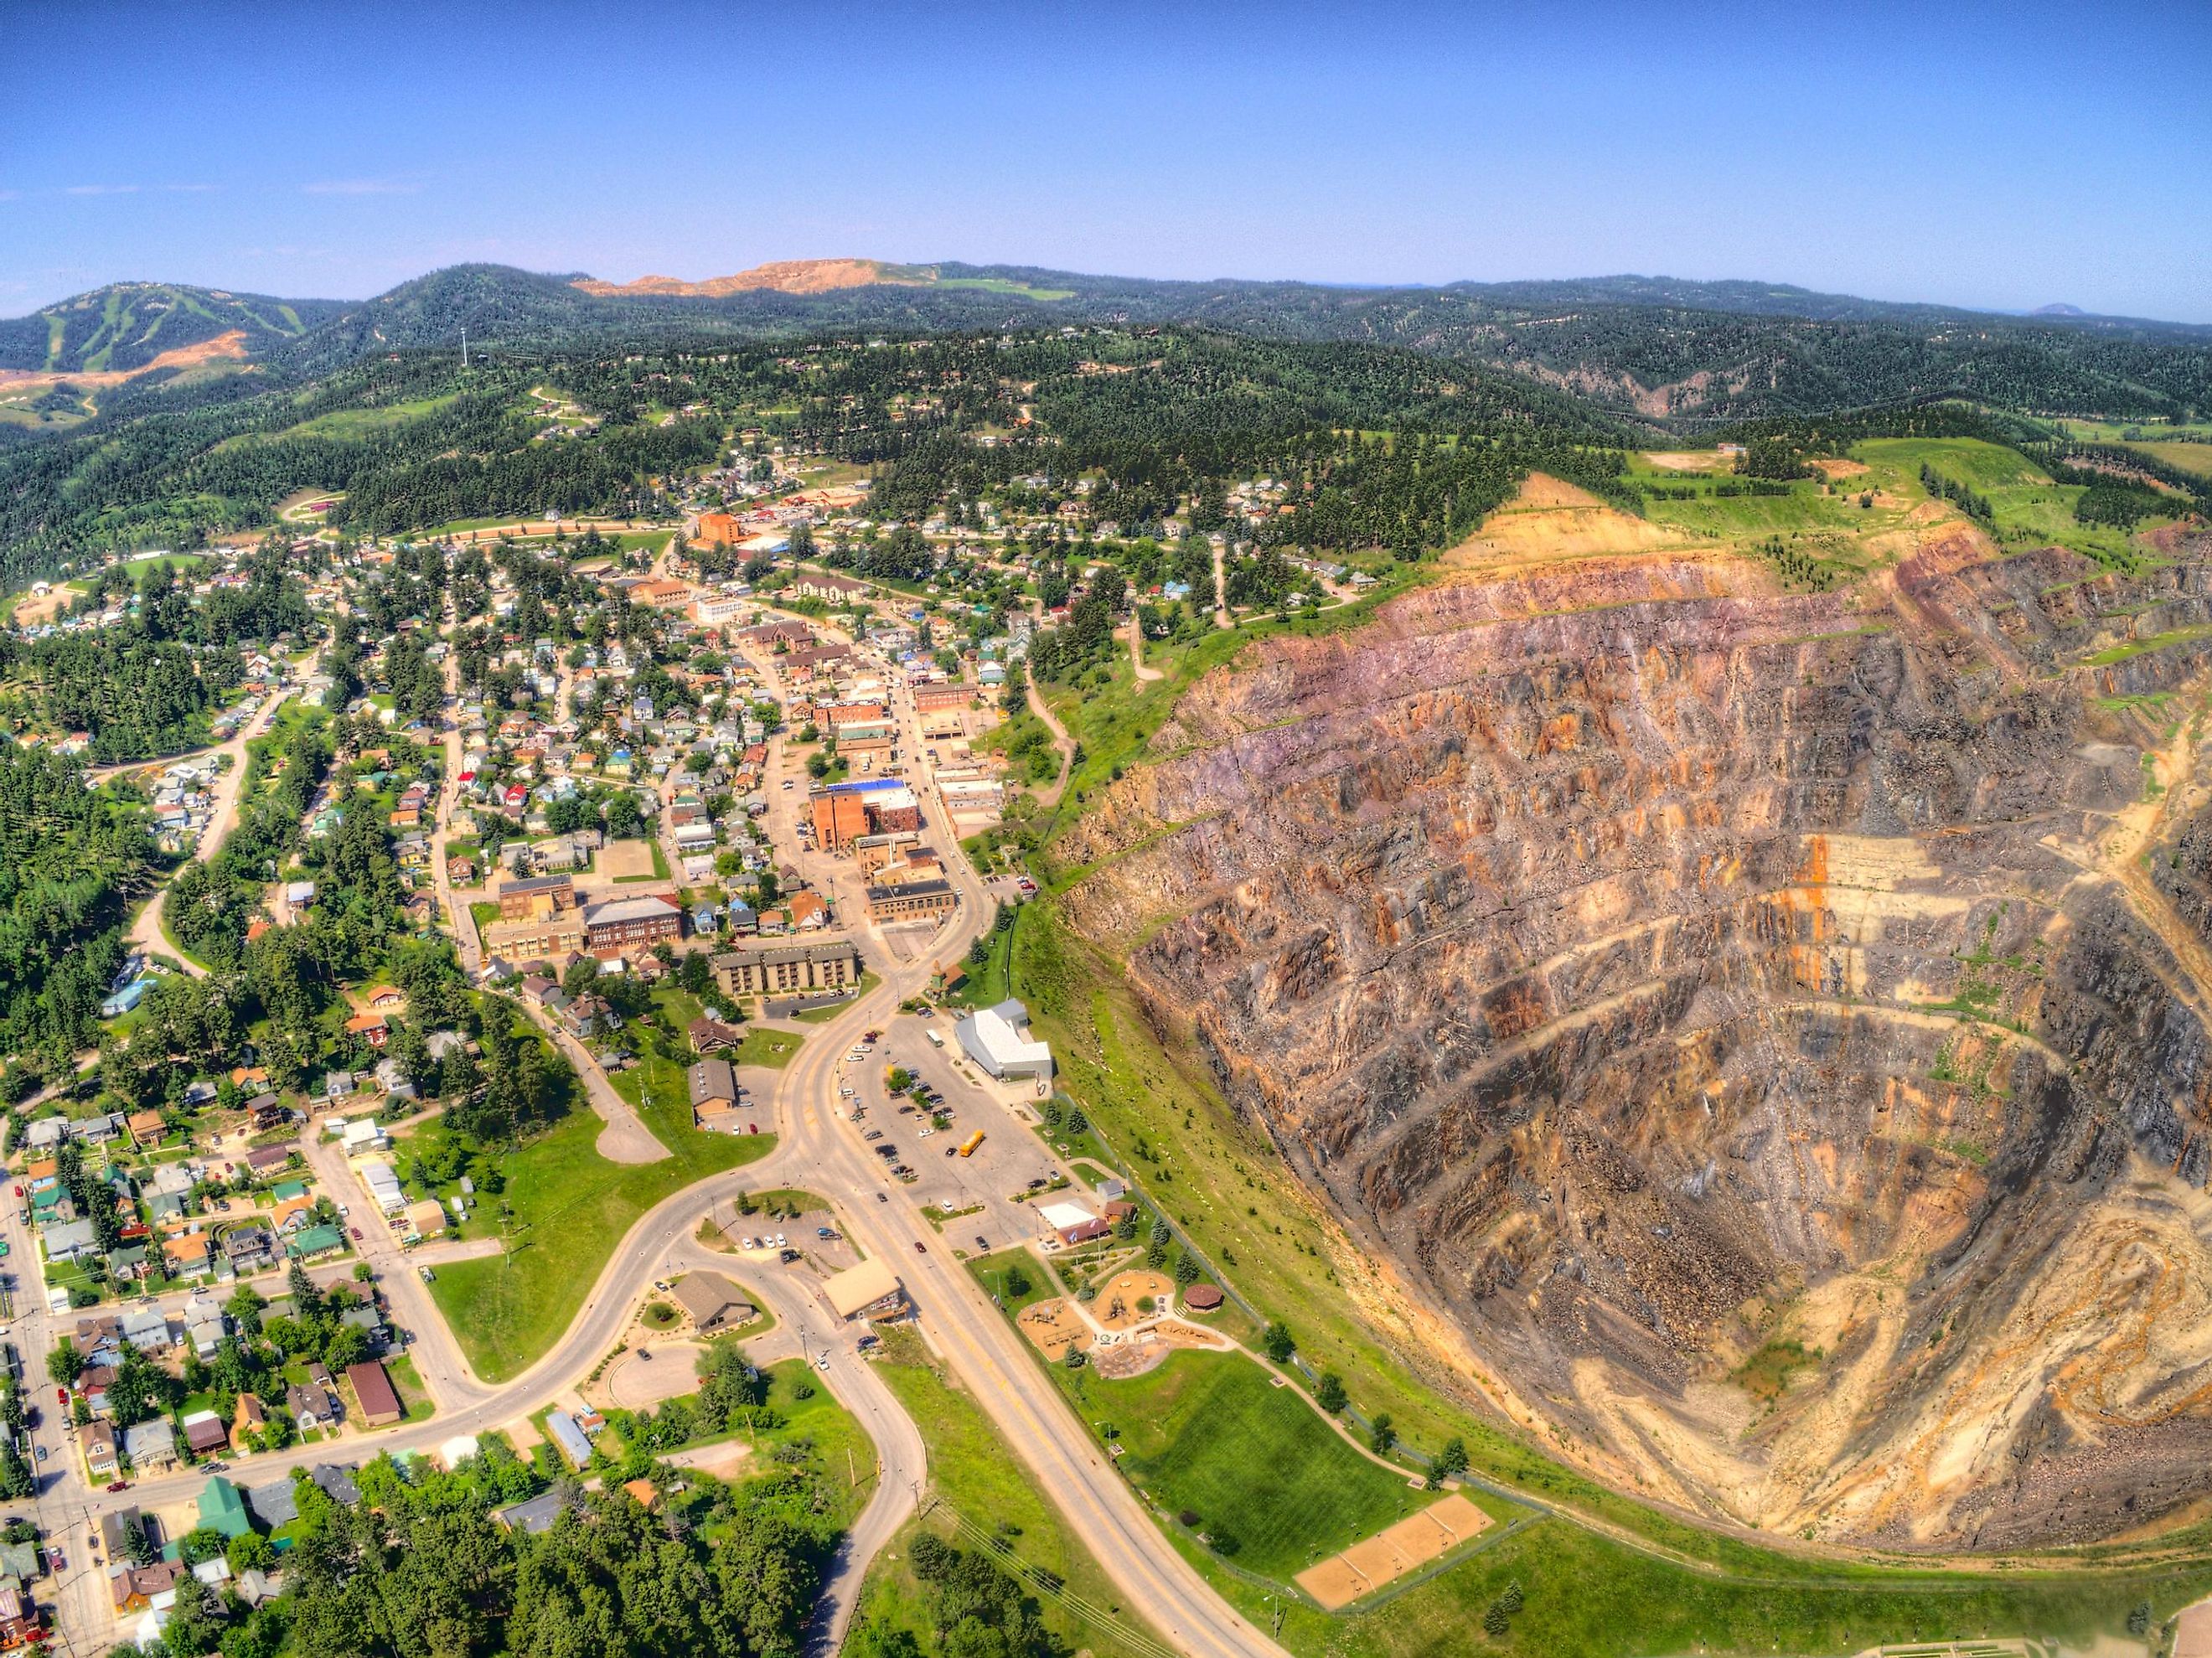 The Homestake Gold Mine In Lead, South Dakota.